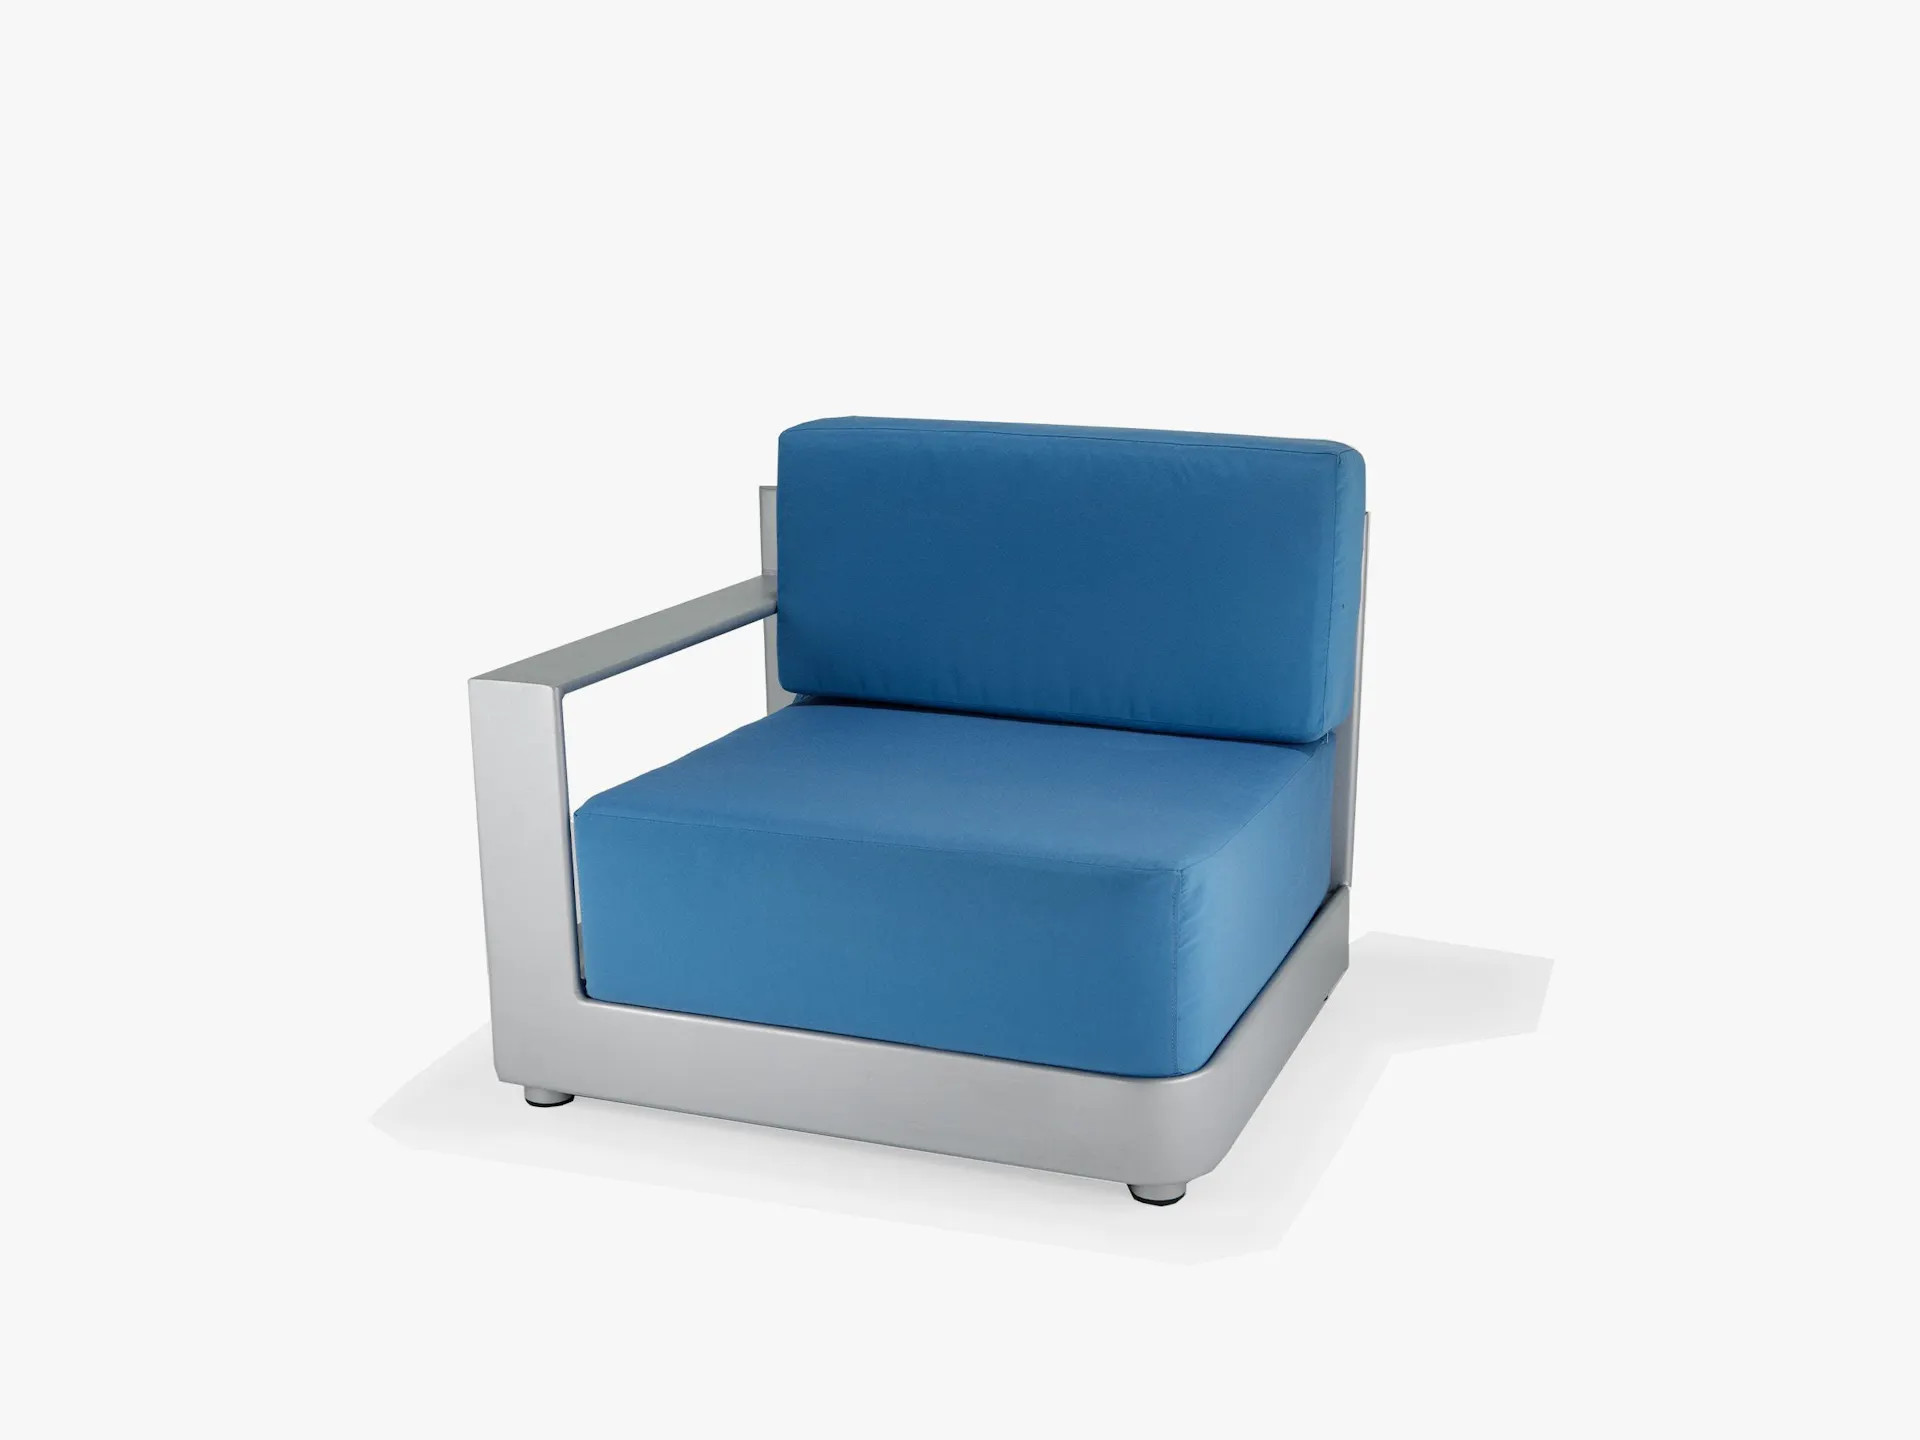 Era Modular Collection Right Arm Chair